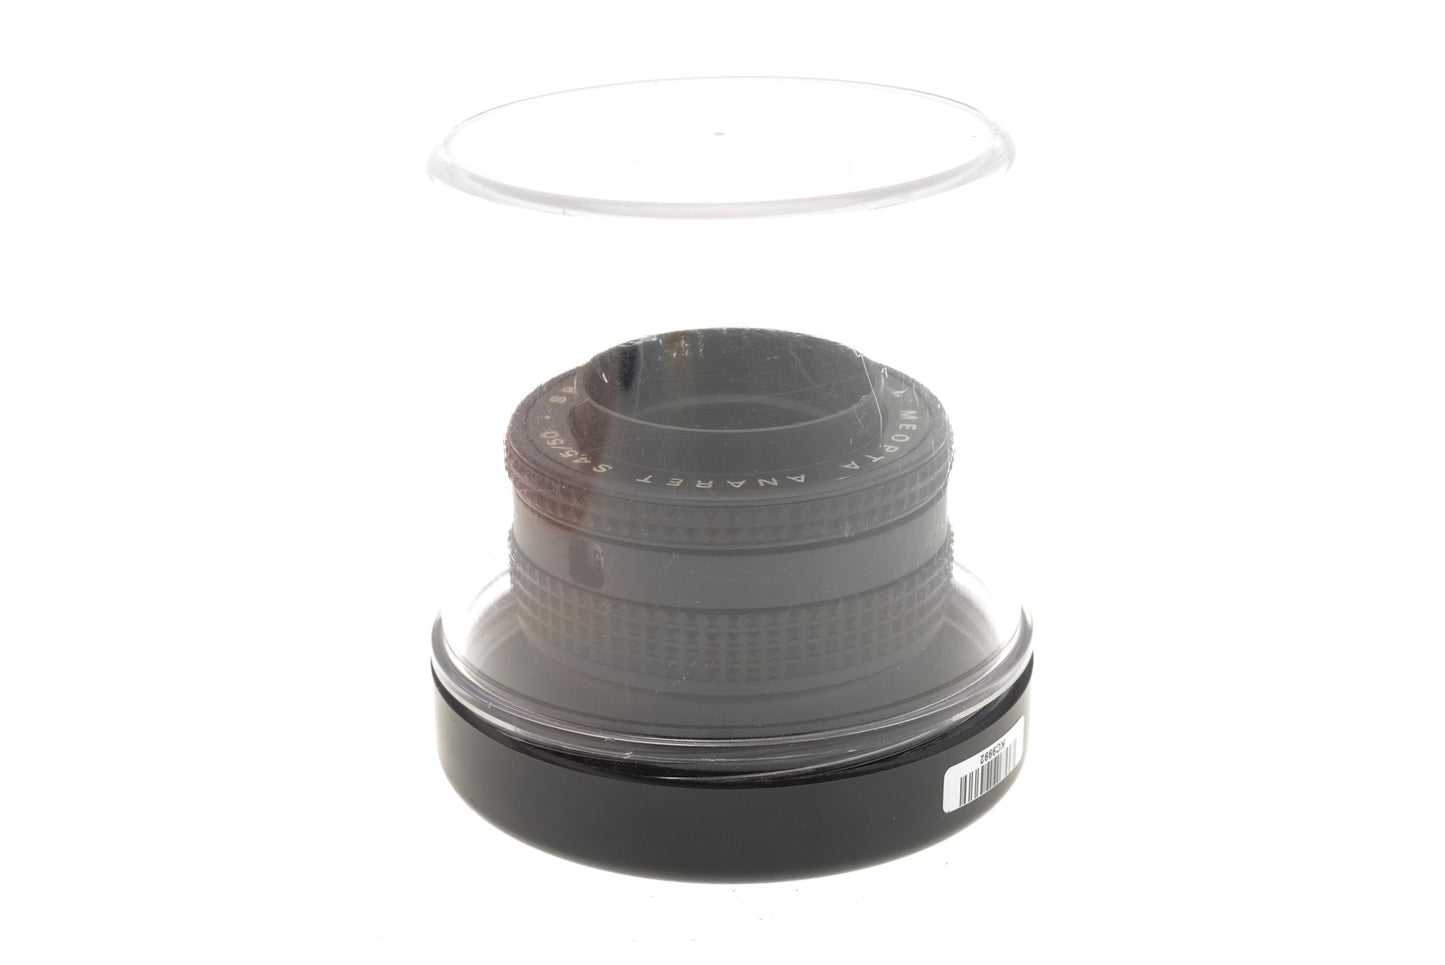 Meopta 50mm f4.5 Anaret S - Lens